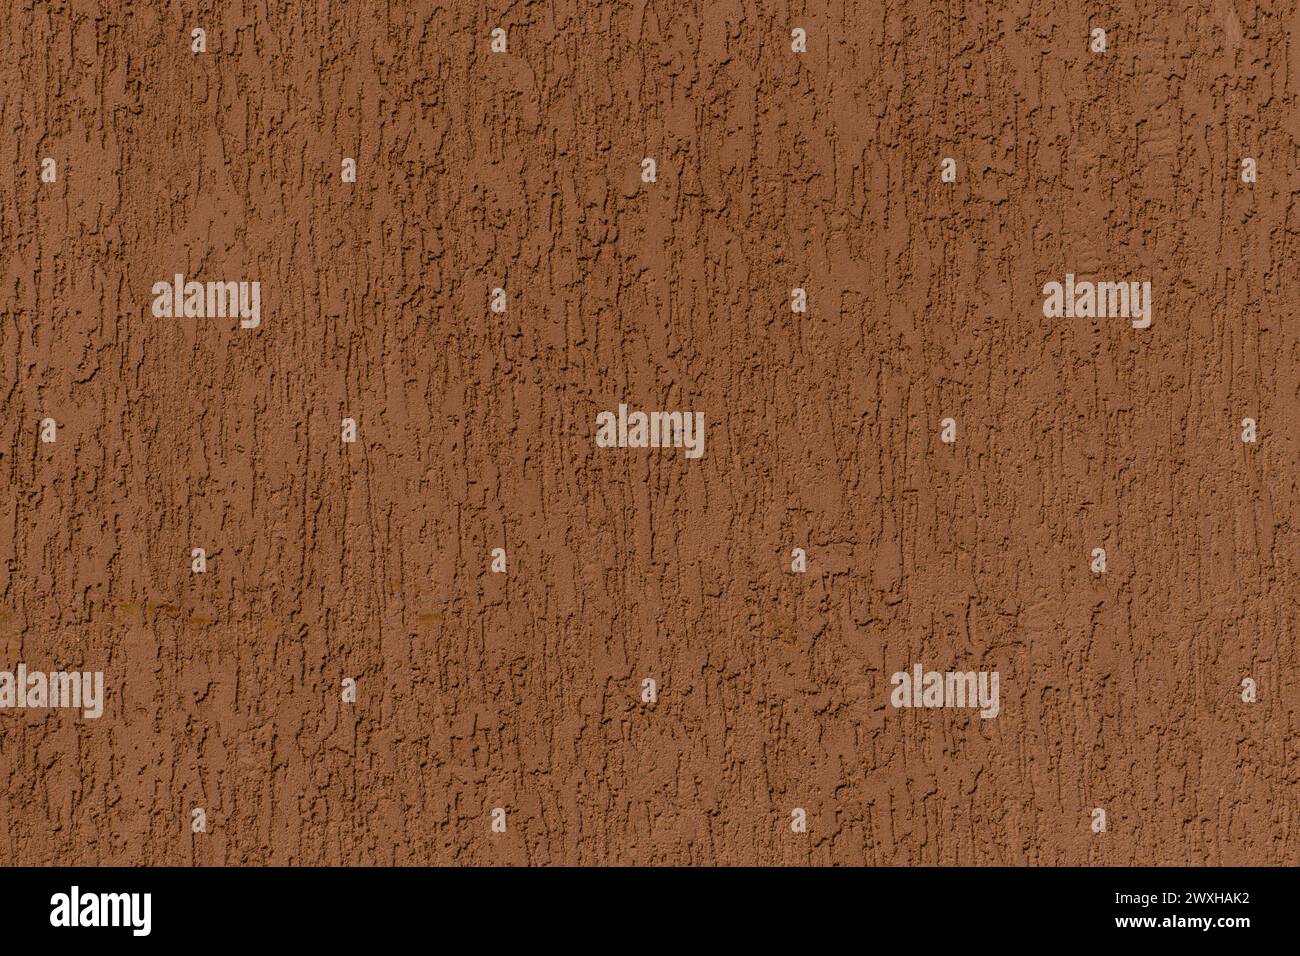 Brauner massiver Wandputz grobes abstraktes Muster Stuck Textur Hintergrundstruktur Hintergrund. Stockfoto